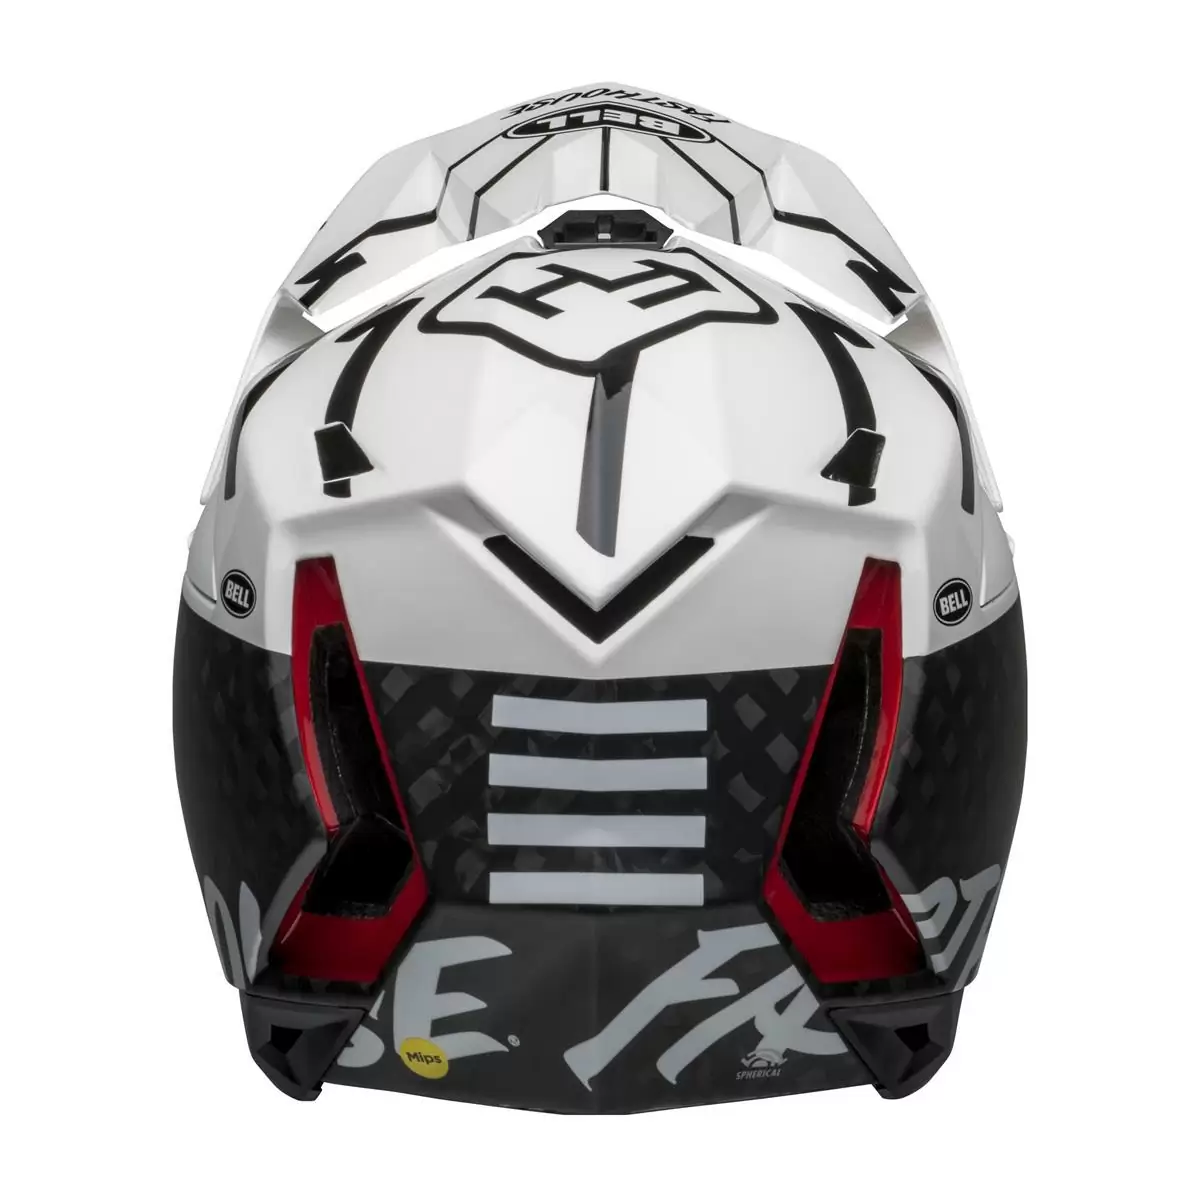 Full-10 Spherical Fasthouse Carbon Full Face Helmet Size XS/S (51-55cm) #5